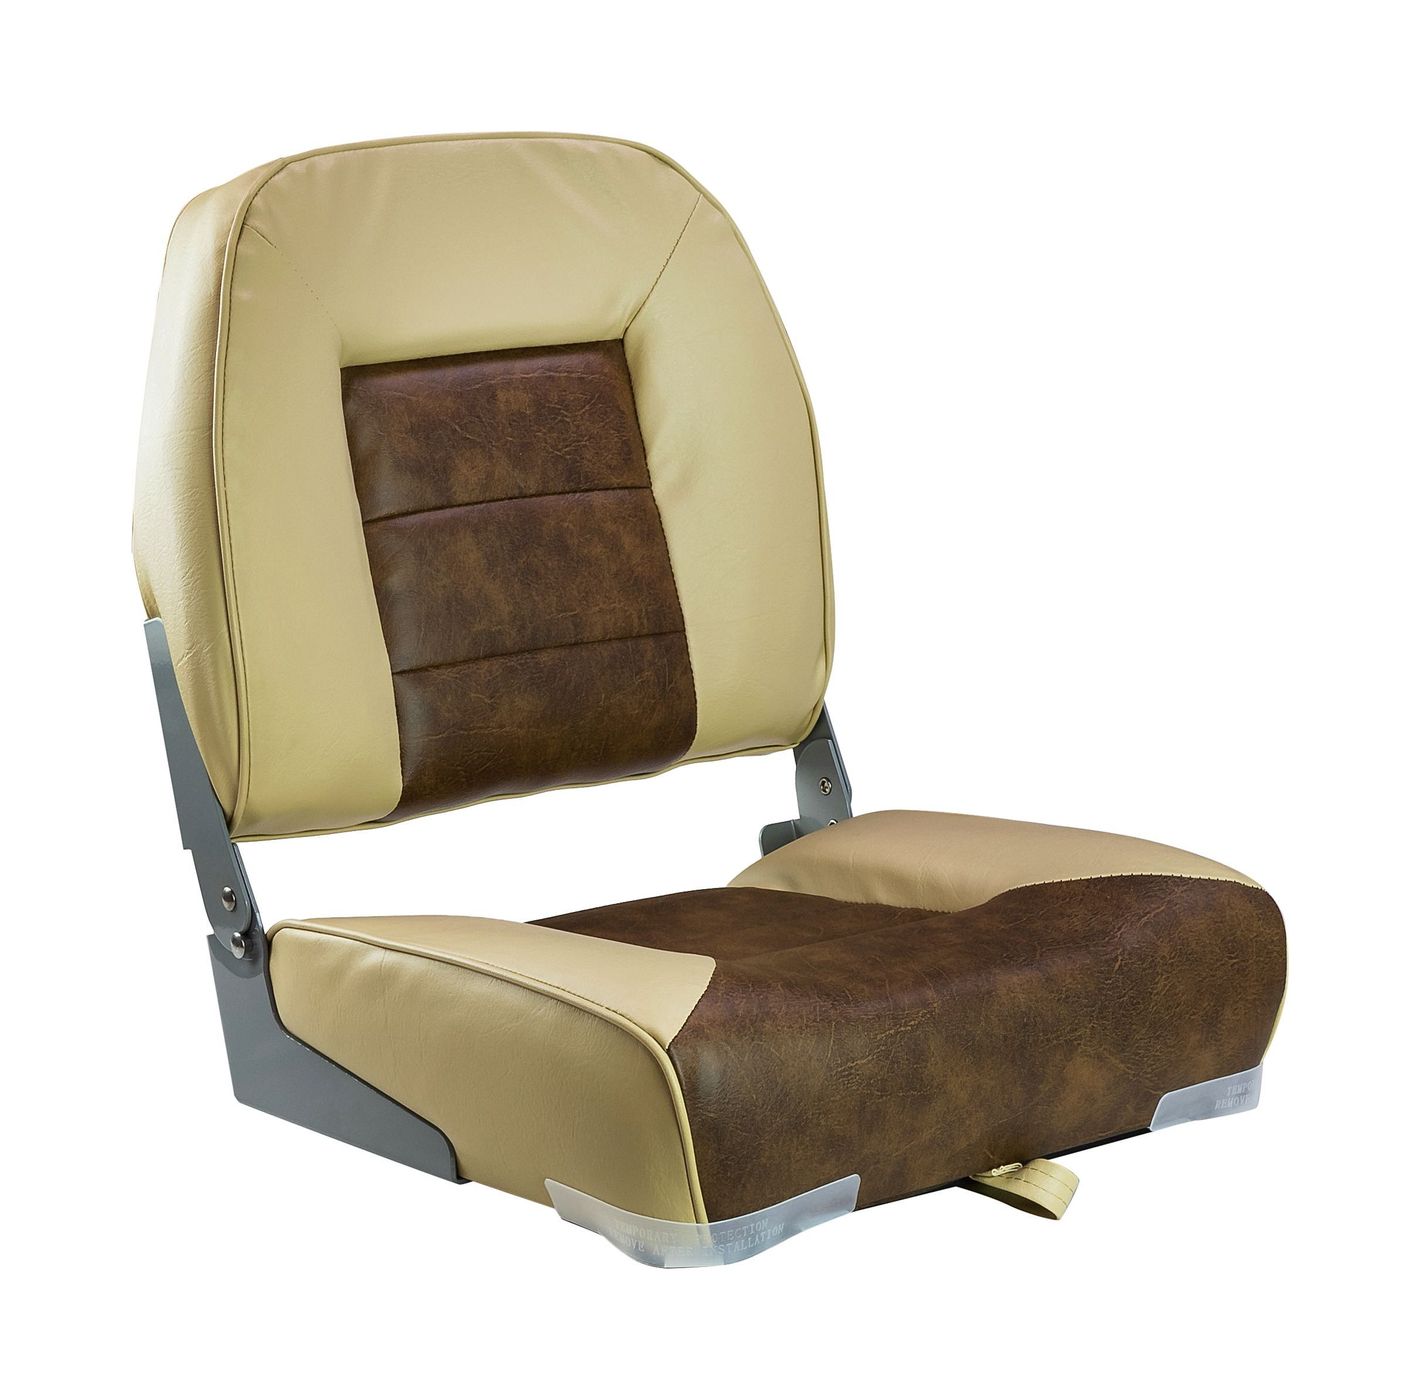 Кресло складное мягкое, обивка винил, цвет песочный/коричневый, Marine Rocket 75121SB-MR рюкзак cliff коричневый br01